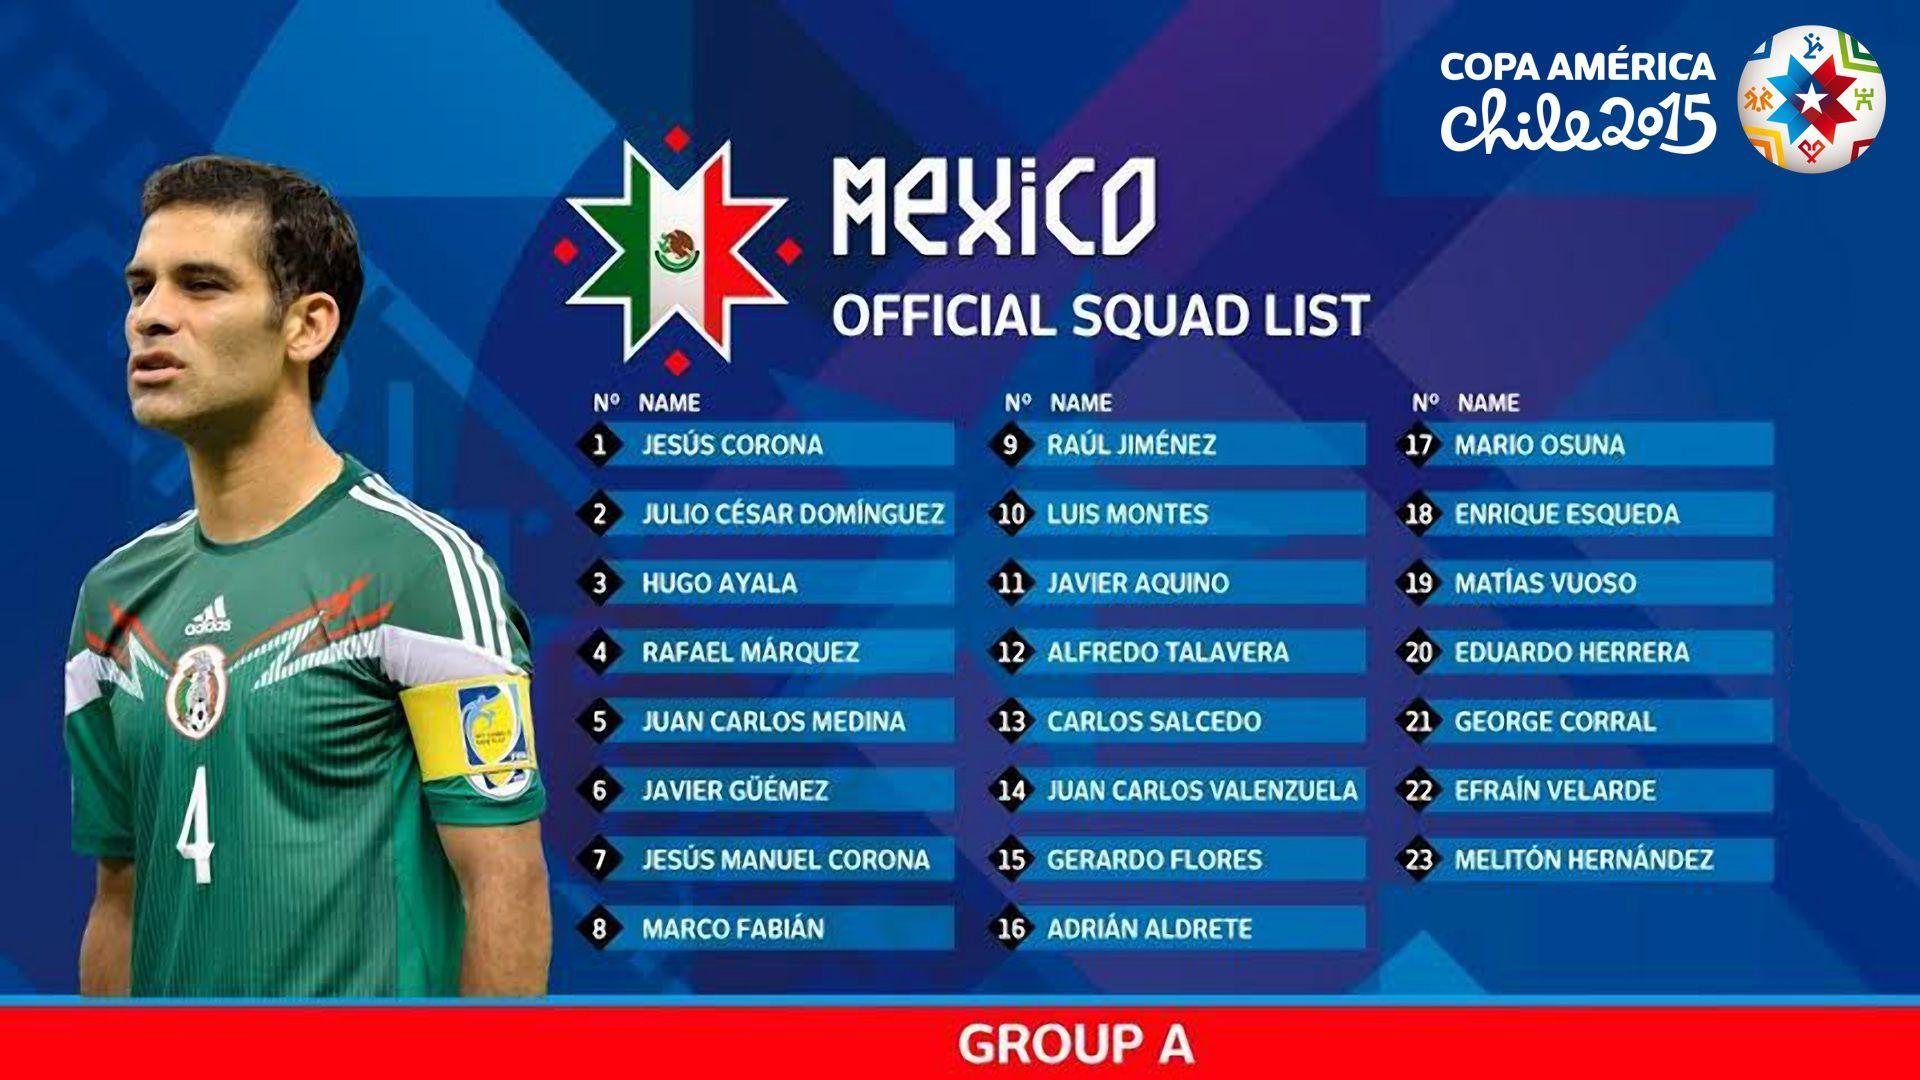 Mexico Team for Copa America Chile 2015 Wallpaper